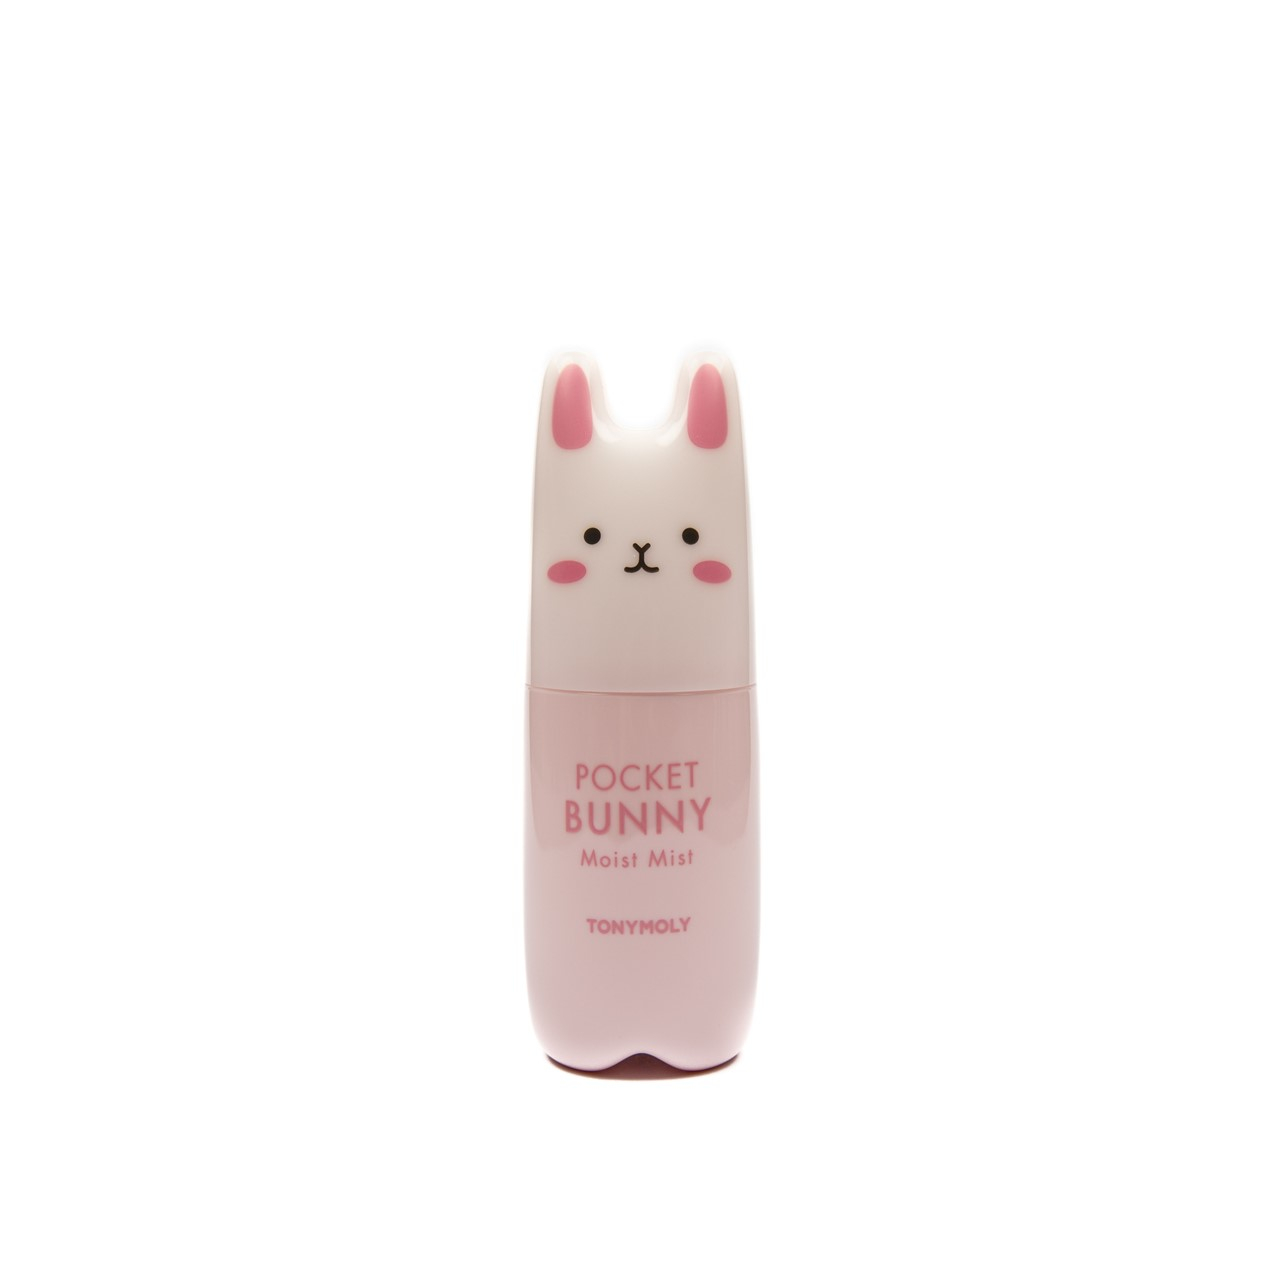 TONYMOLY Pocket Bunny Moist Mist 60ml (2.03fl oz)